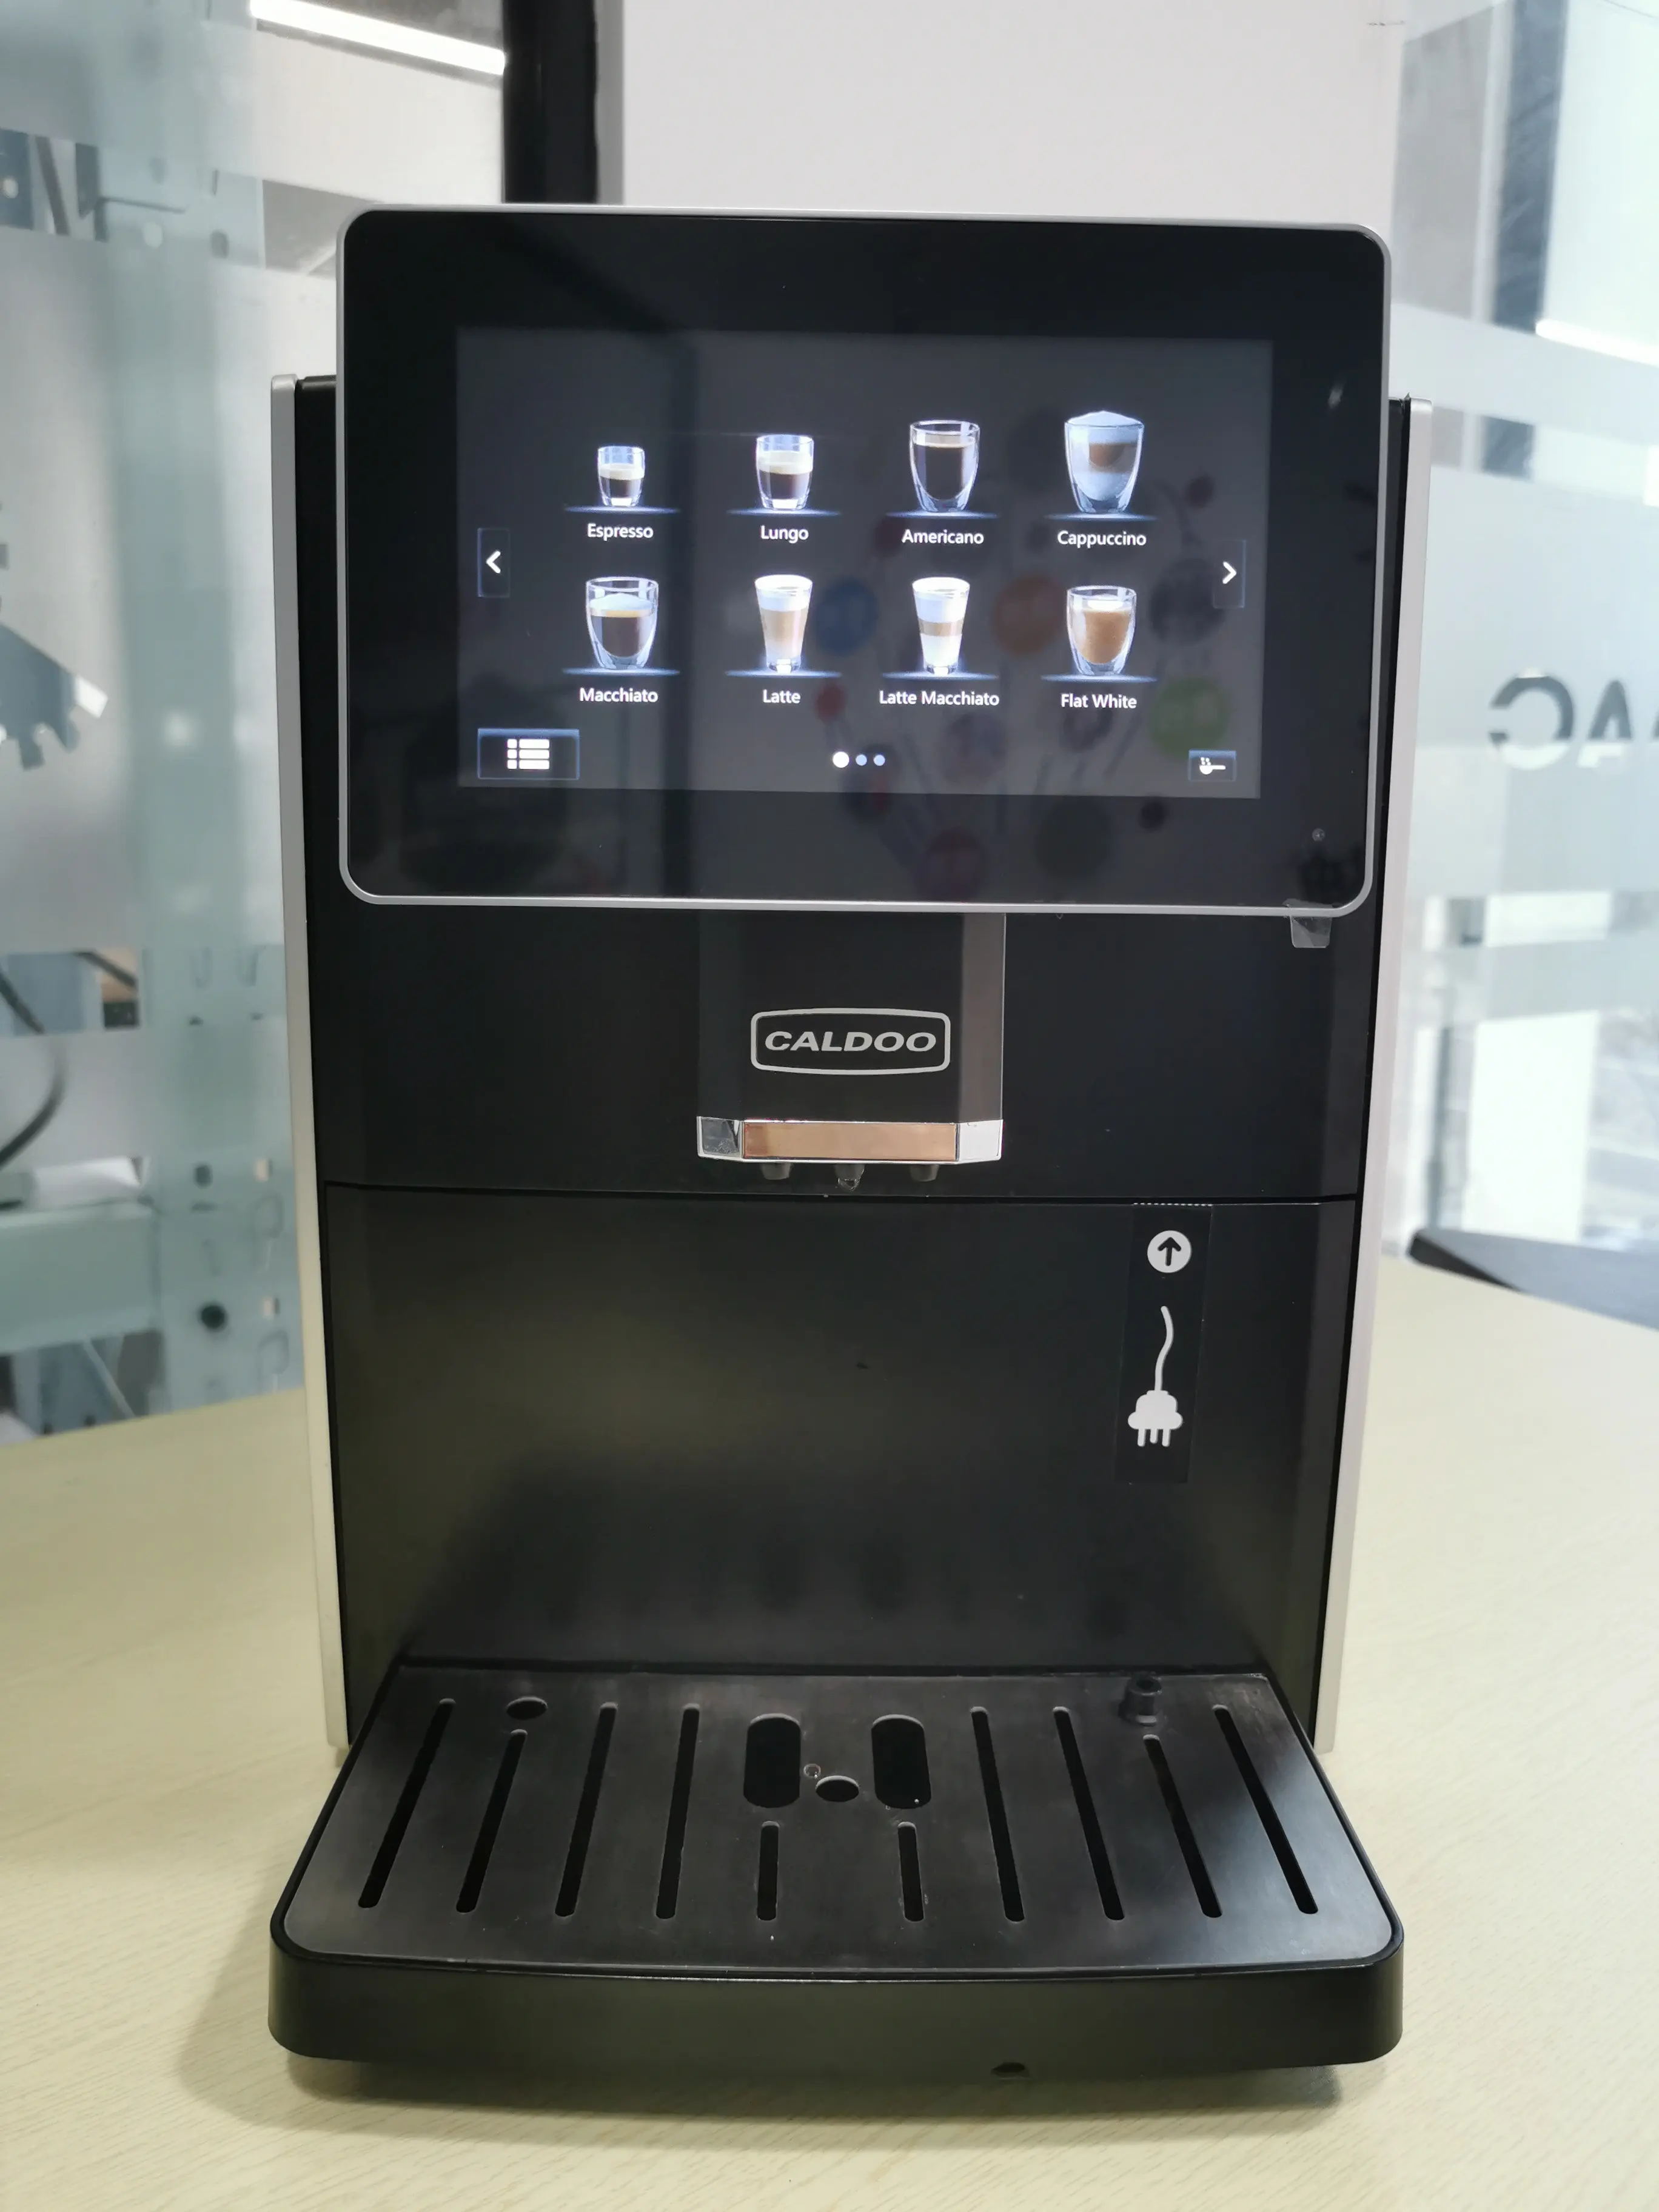 ماكينة كابتشينو تجارية آلية تعمل باللمس تعمل باللمس من الفولاذ المقاوم للصدأ ماكينة قهوة الإسبريسو